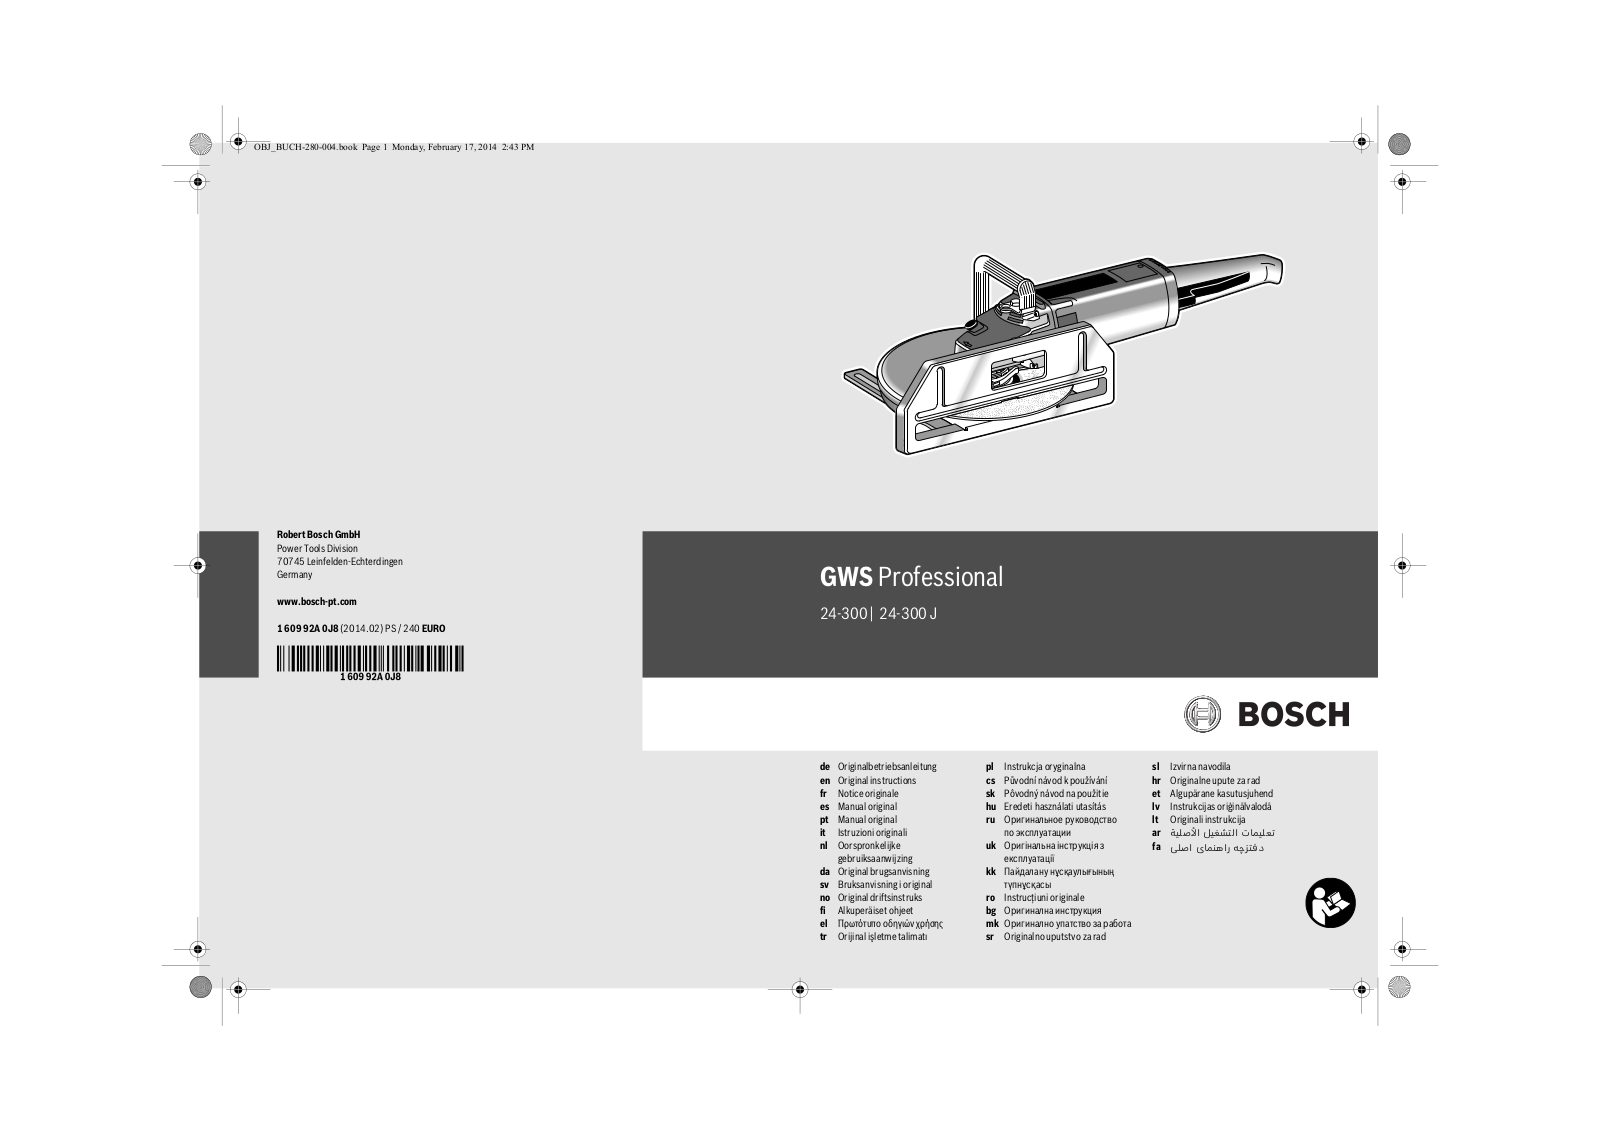 Bosch GWS 24-300 J PROFESSIONAL, GWS 24-300 PROFESSIONAL Original Instructions Manual